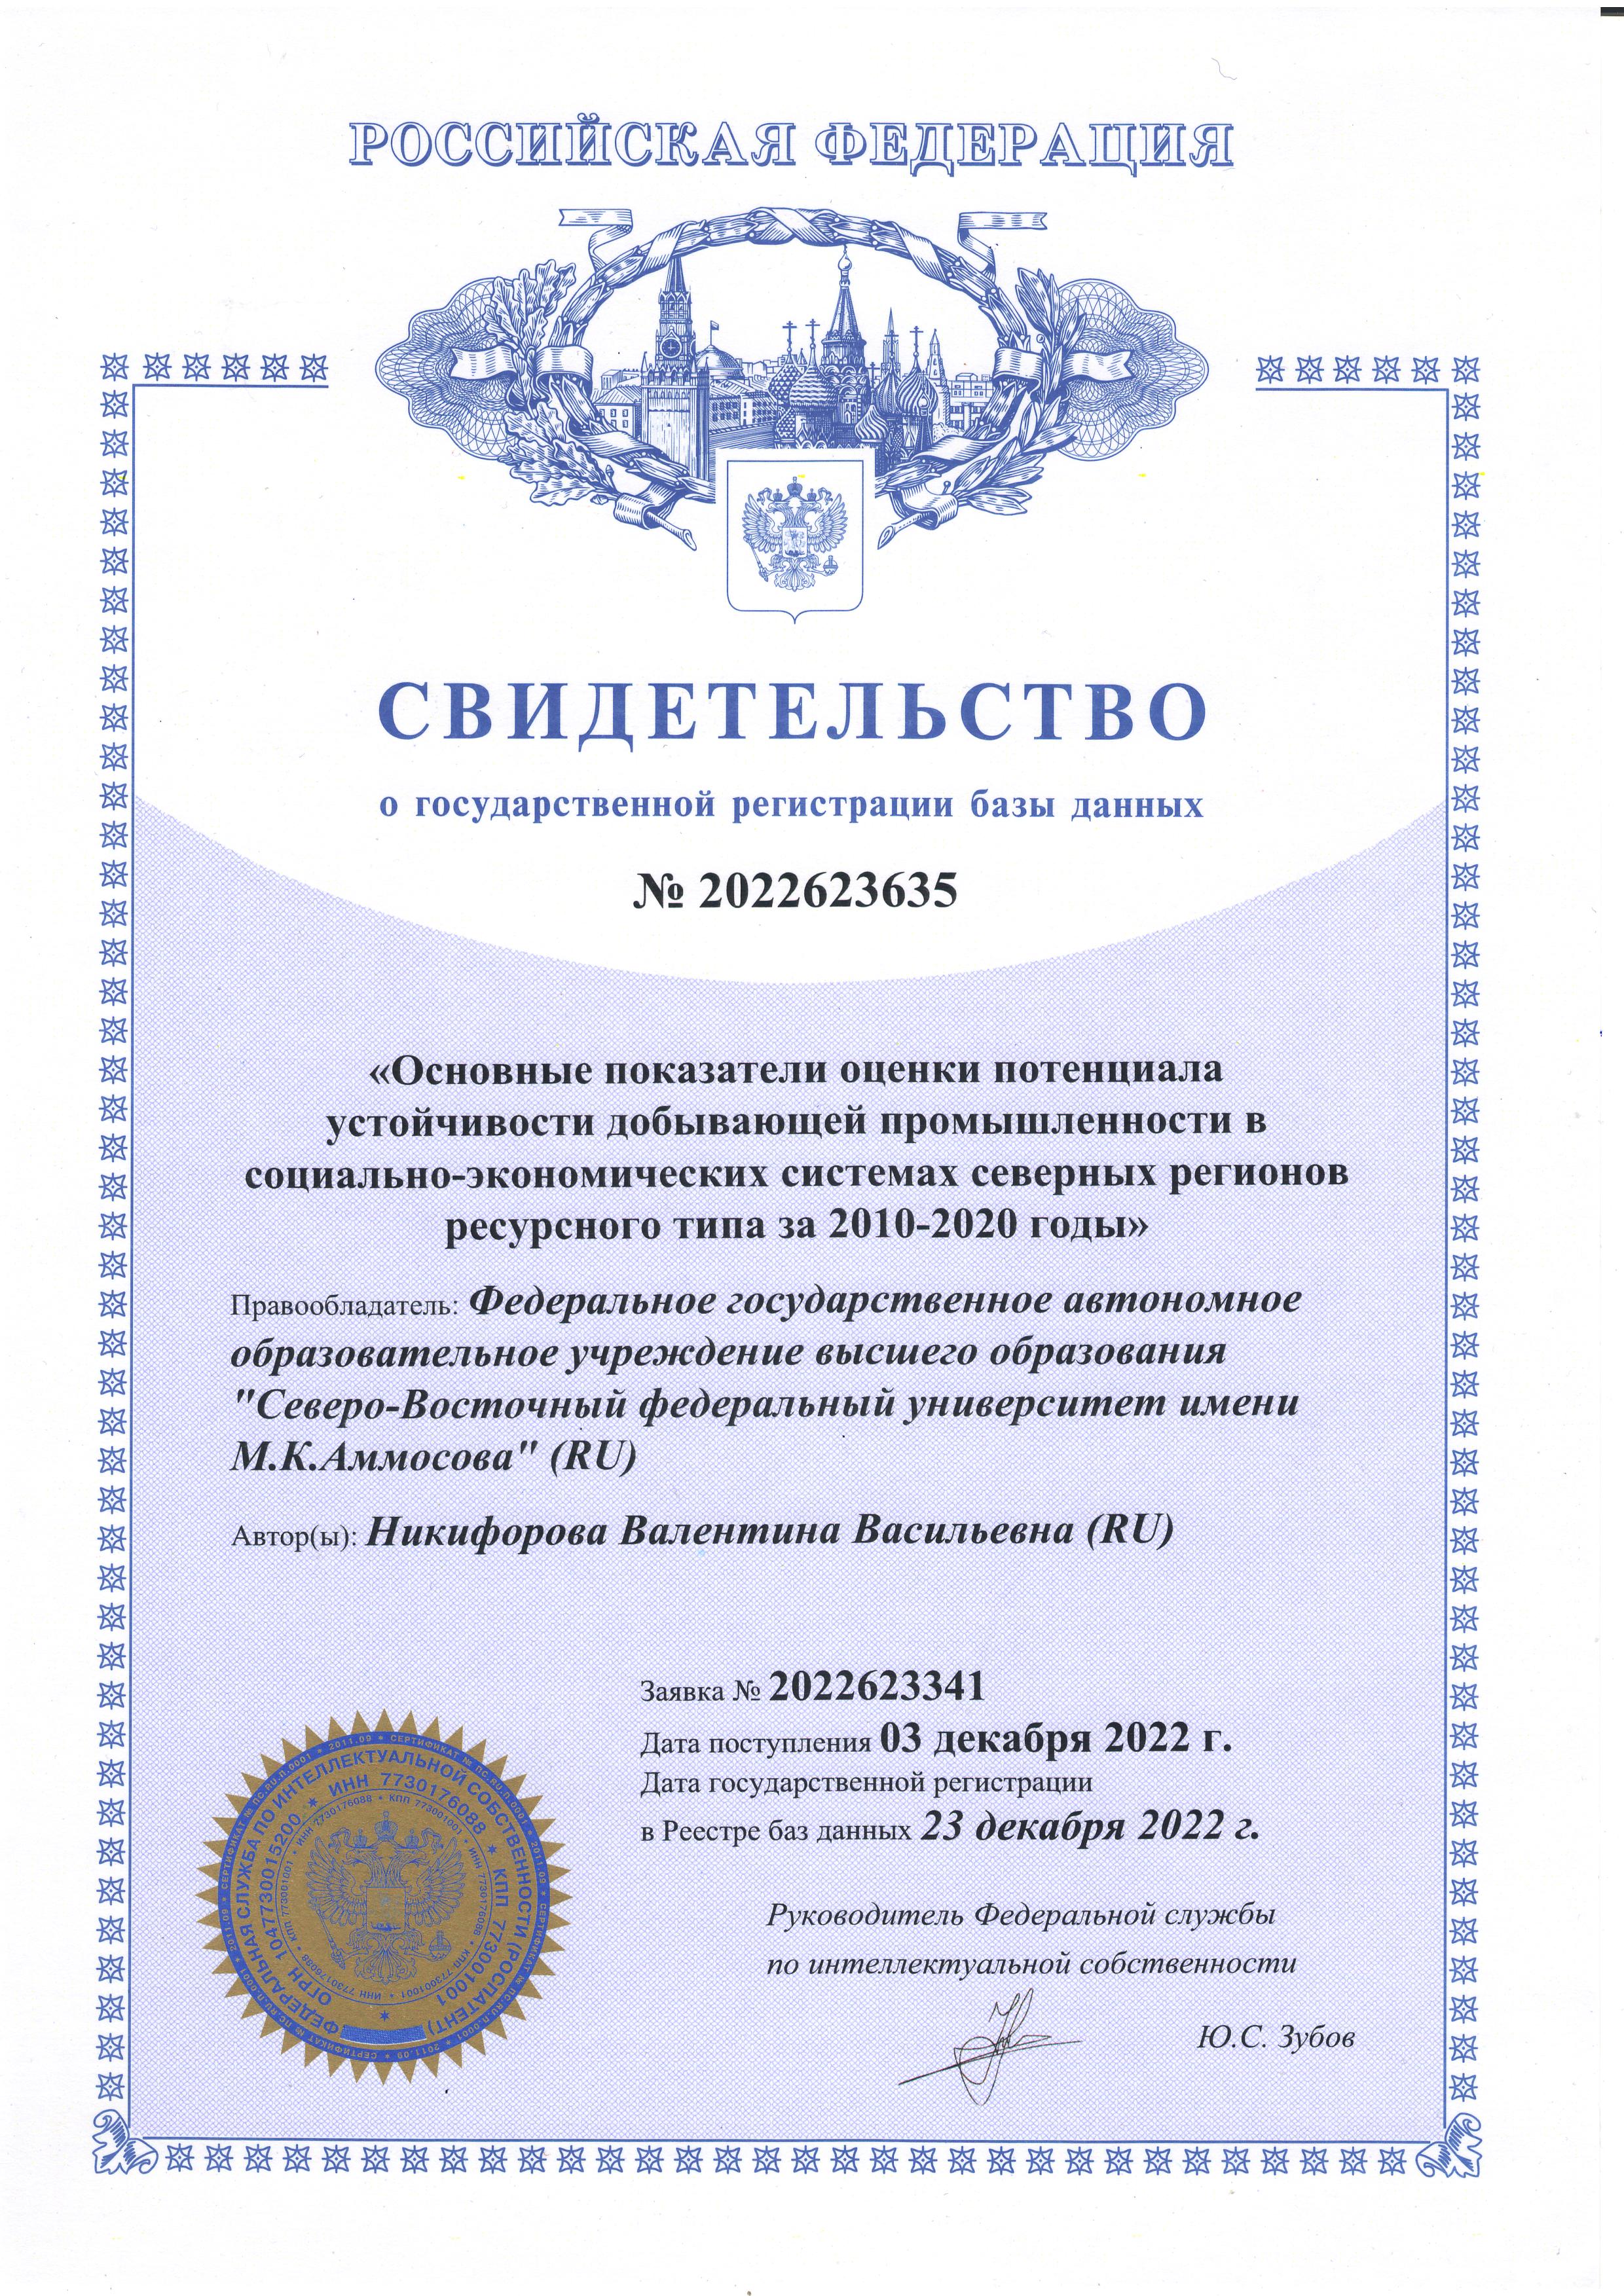 Поздравляем в.н.с. Никифорову Валентину Васильевну с получением свидетельства о  государственной регистрации базы данных!